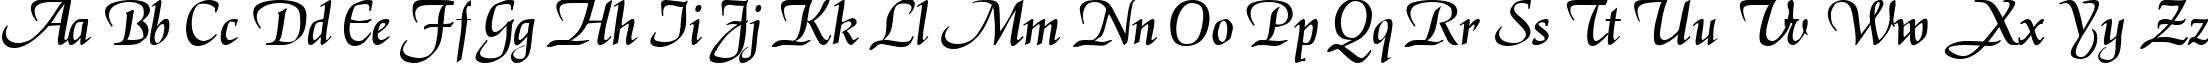 Пример написания английского алфавита шрифтом Magik